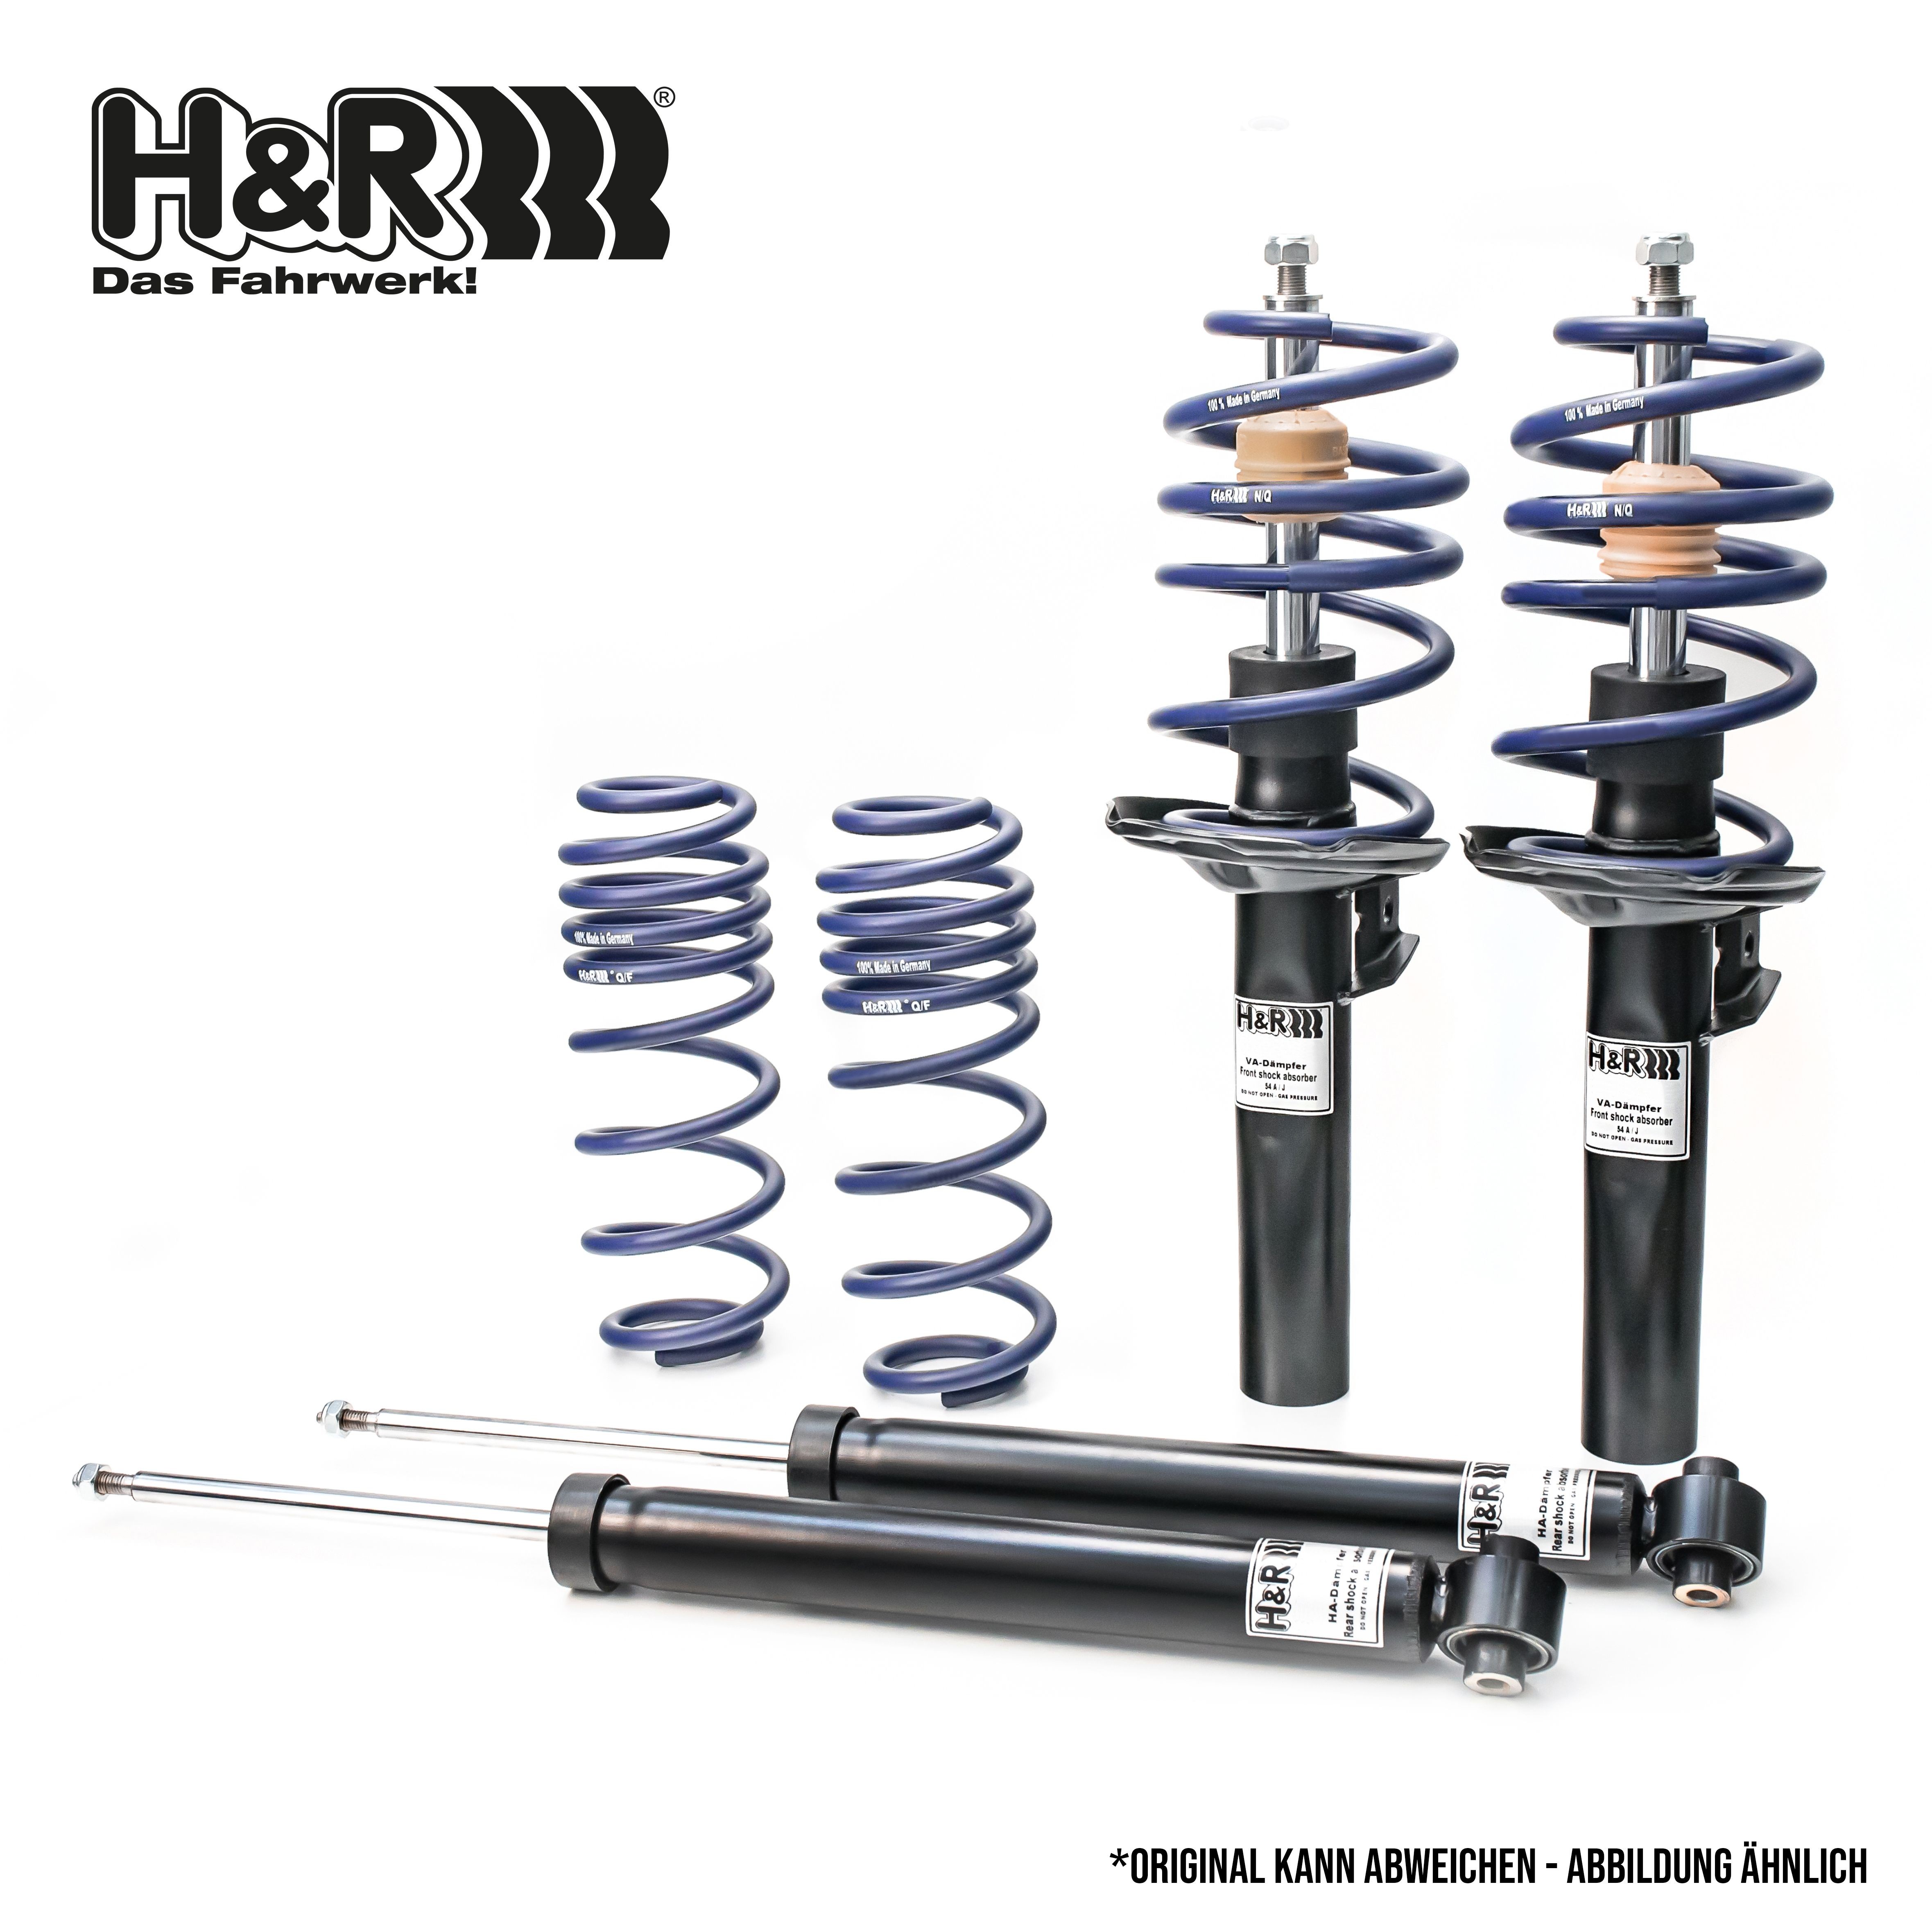 H&R Shock absorber set 40981-1 buy